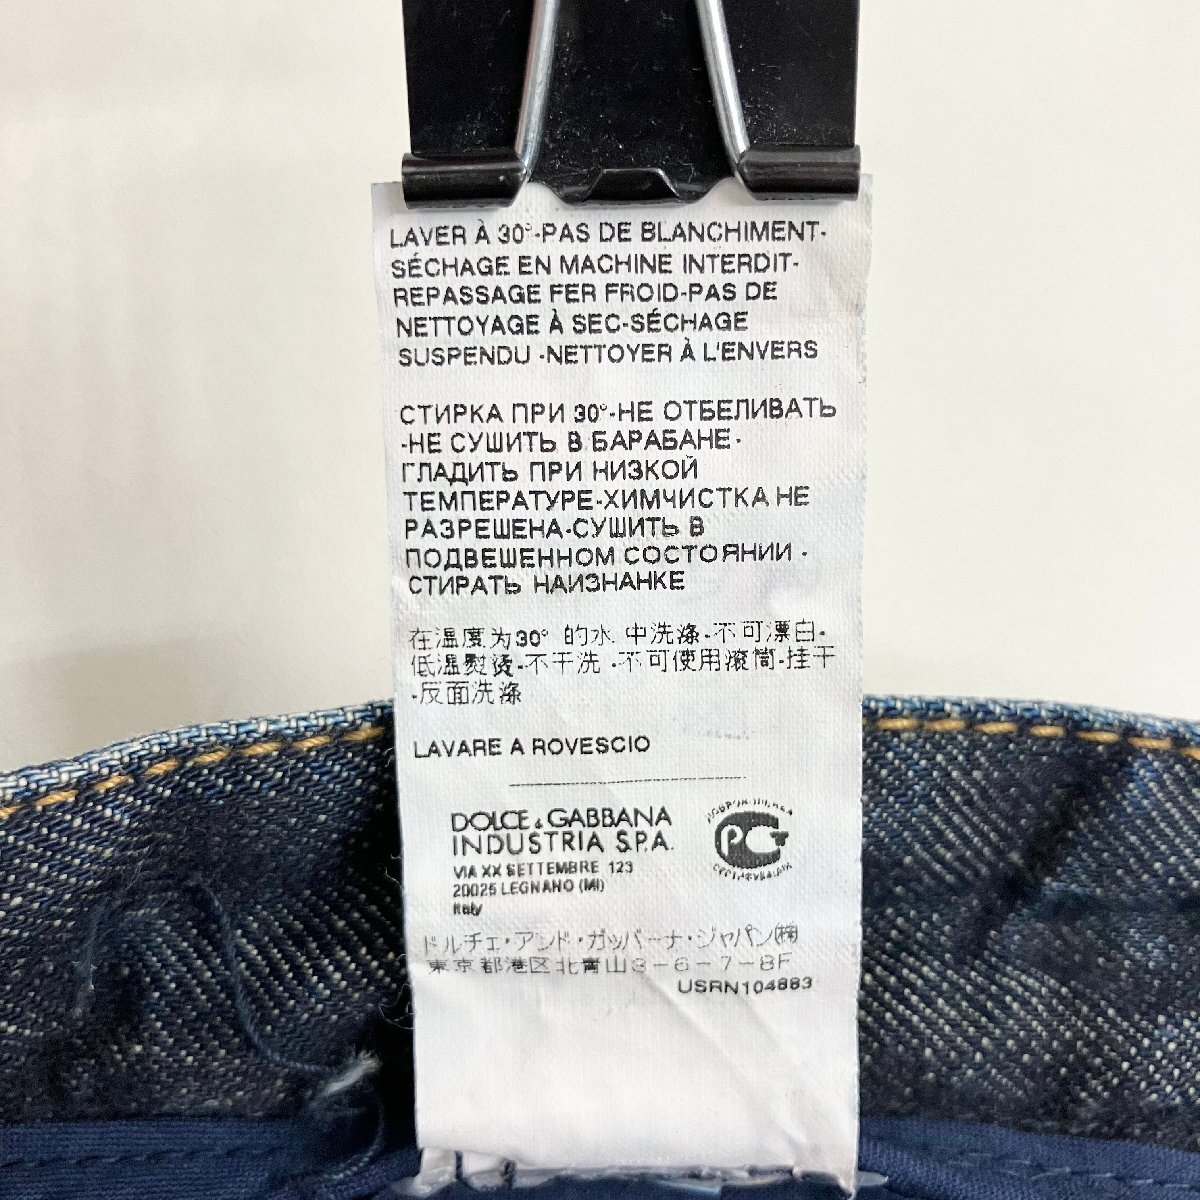 *[ б/у одежда ]DOLCE&GABBANA D&G Dolce & Gabbana Denim шорты джинсы ji- хлеб повреждение ремонт обработка хлопок size56 мужской 0.63kg